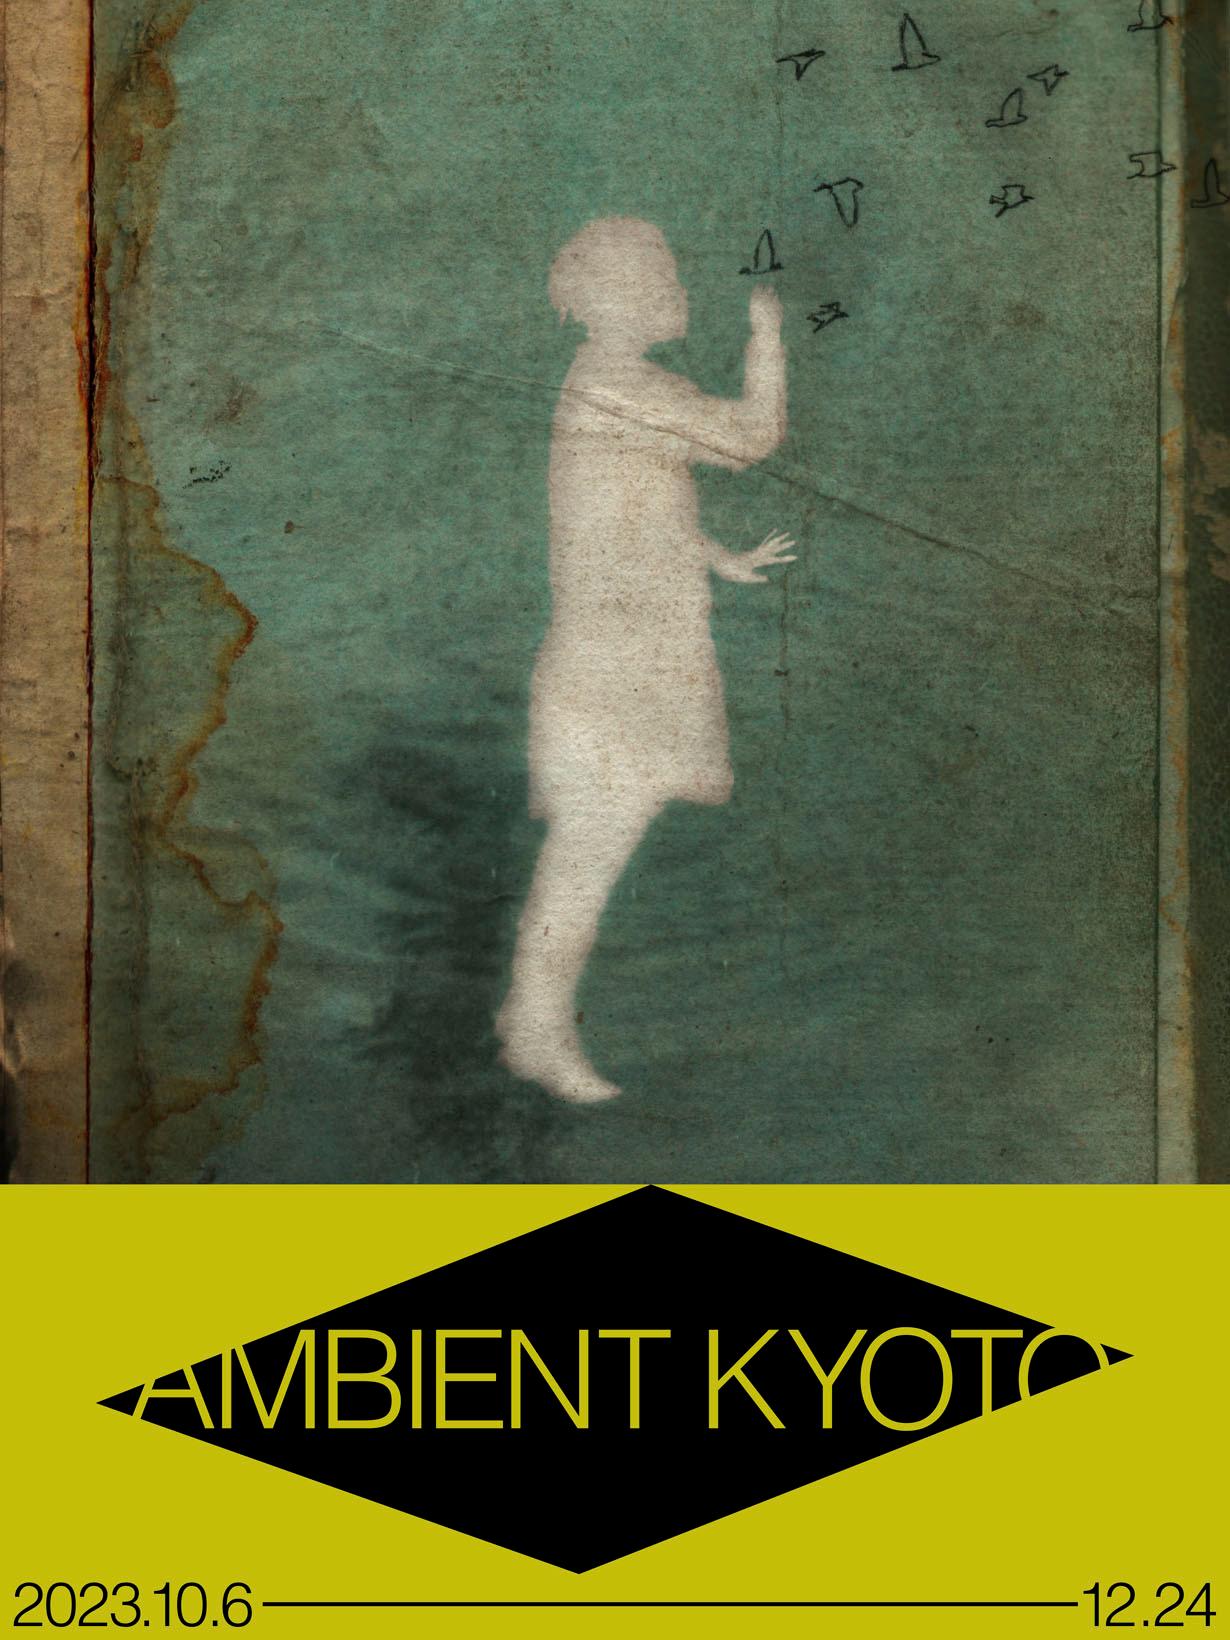 『AMBIENT KYOTO 2023』キー・ビジュアル。デザインはアレックス・ソマーズによるもので、ロゴデザインは、グラフィックデザイナーの田中せりが担当。